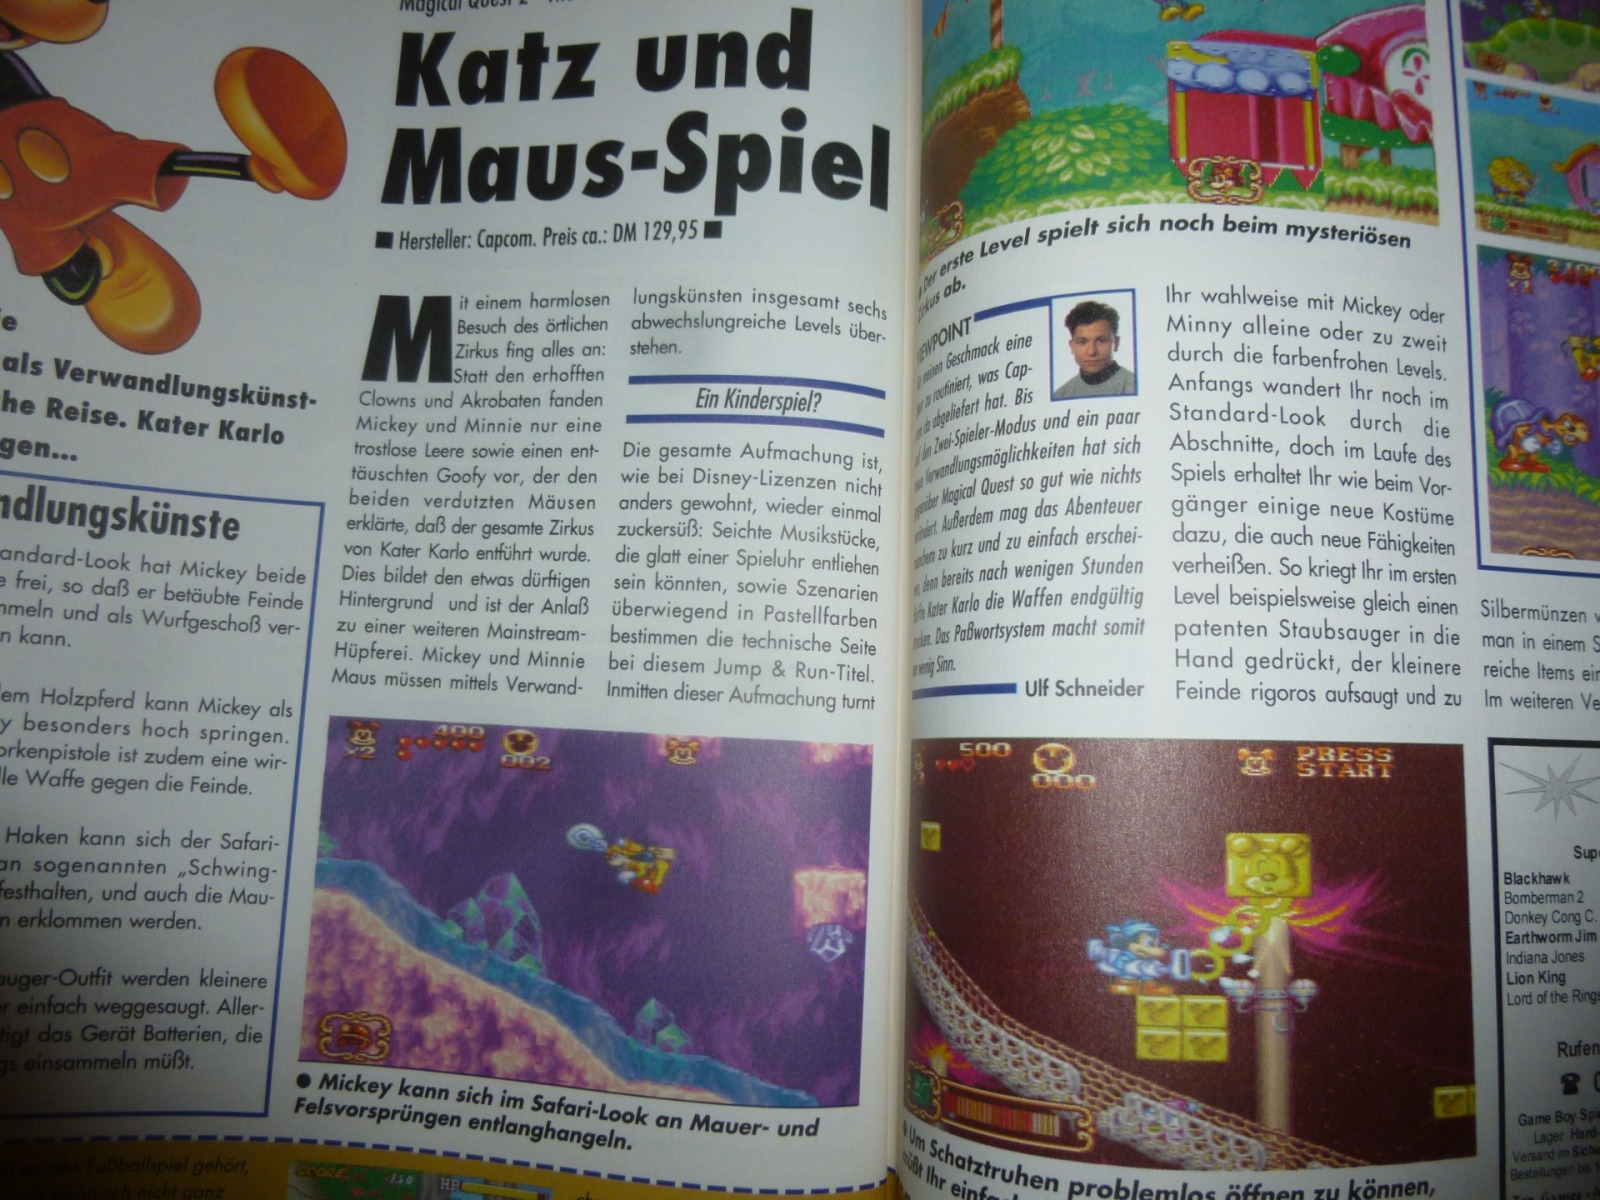 Play Time - Das Computer- und Videospiele-Magazin - Ausgabe 2/95 1995 17